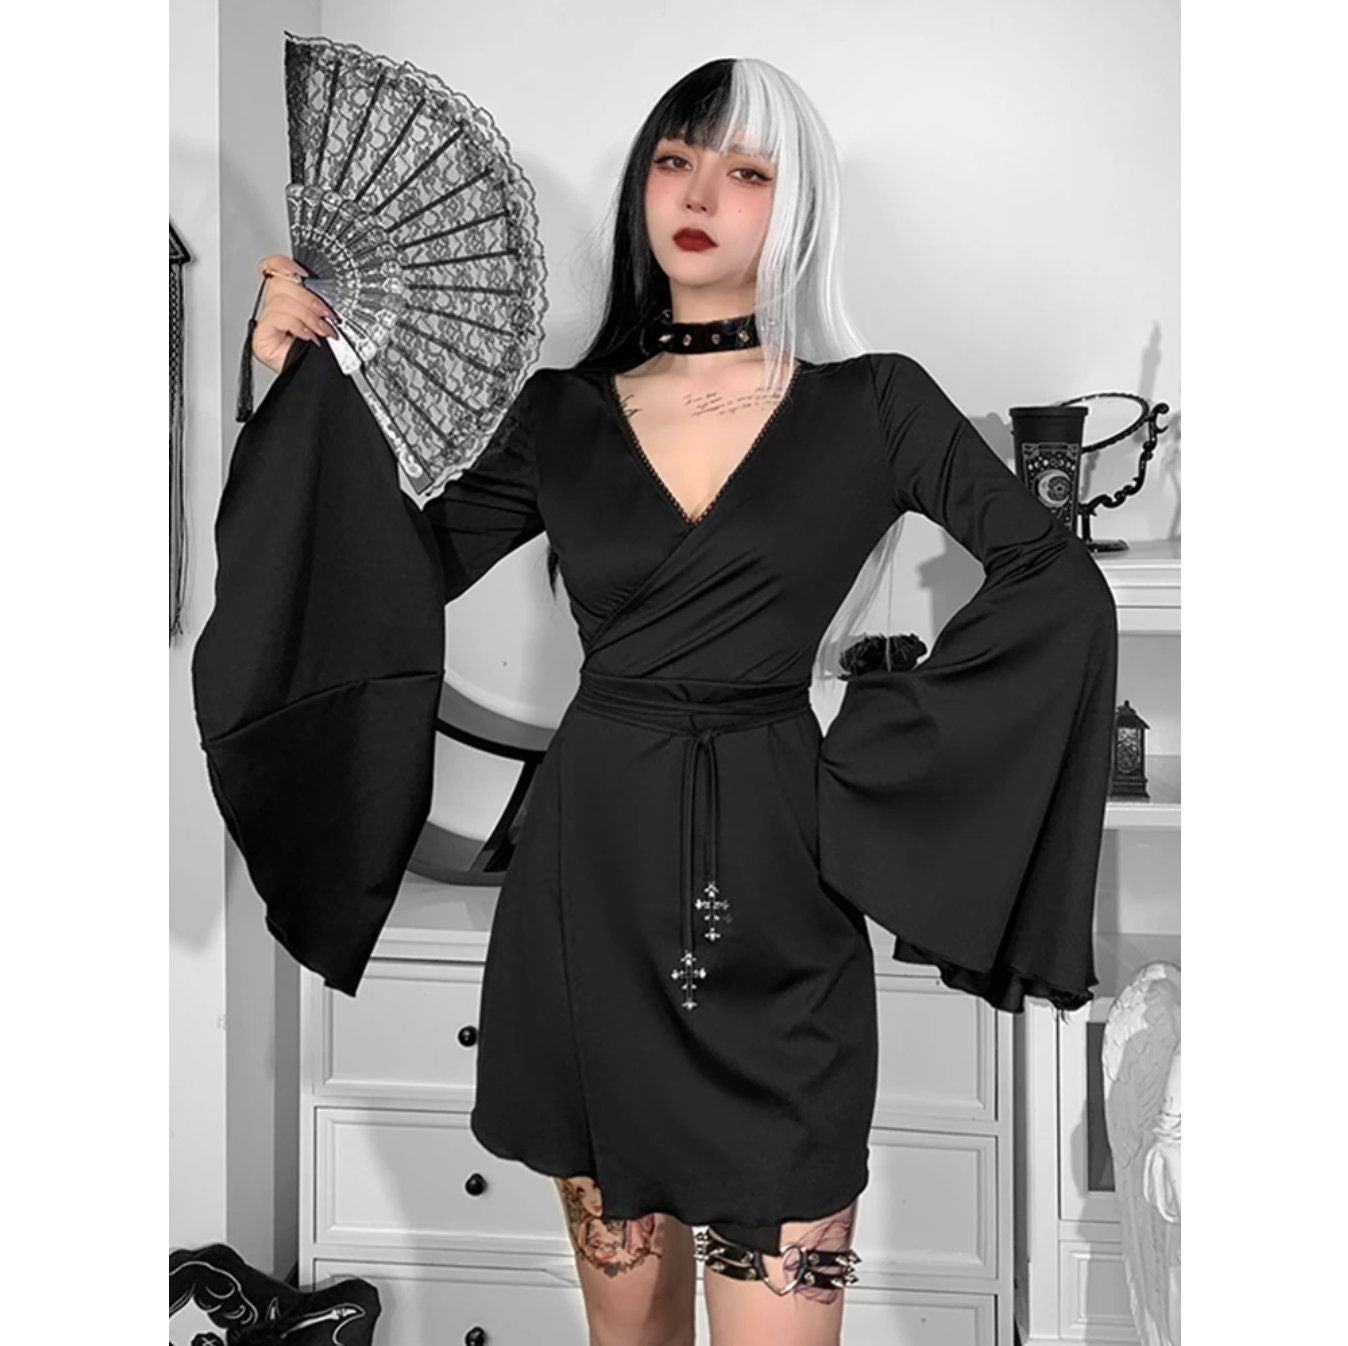 Goth dress gothic clothing emo alt clothing Gothic Flare Sleeve Dress V-neck Aesthetic Black Mini Dress Harajuku Elegant Party Sexy A-LINE